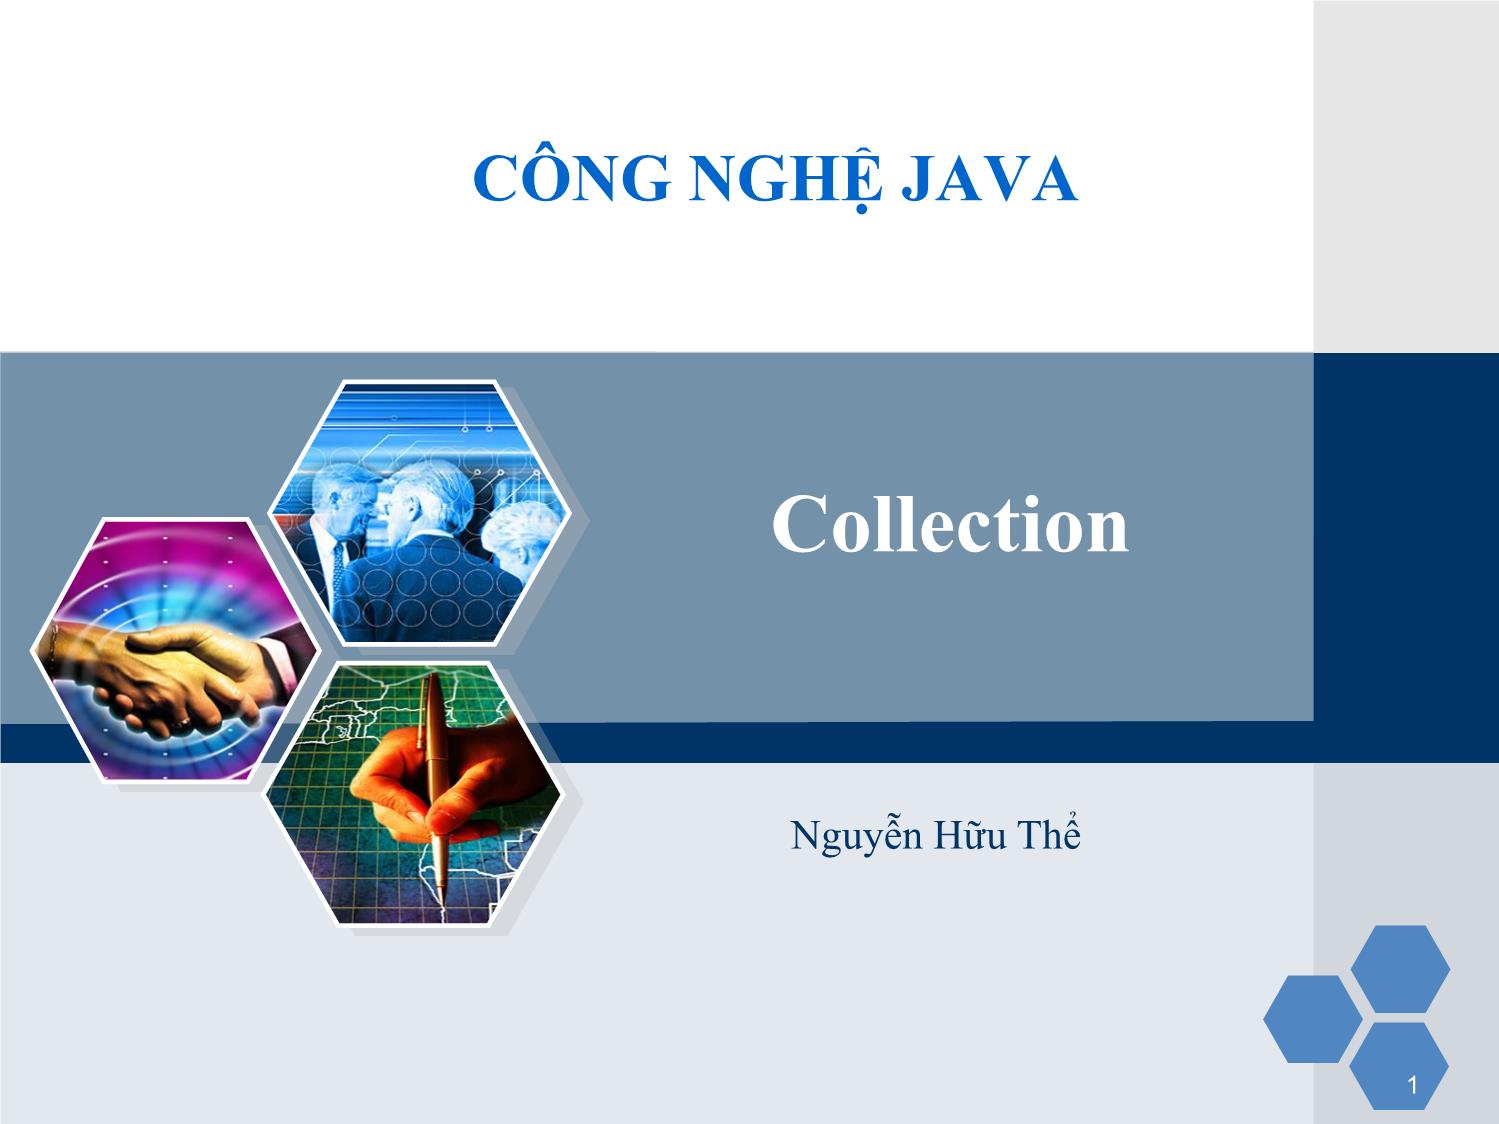 Bài giảng Công nghệ Java - Bài 1: Collection - Nguyễn Hữu Thể trang 1